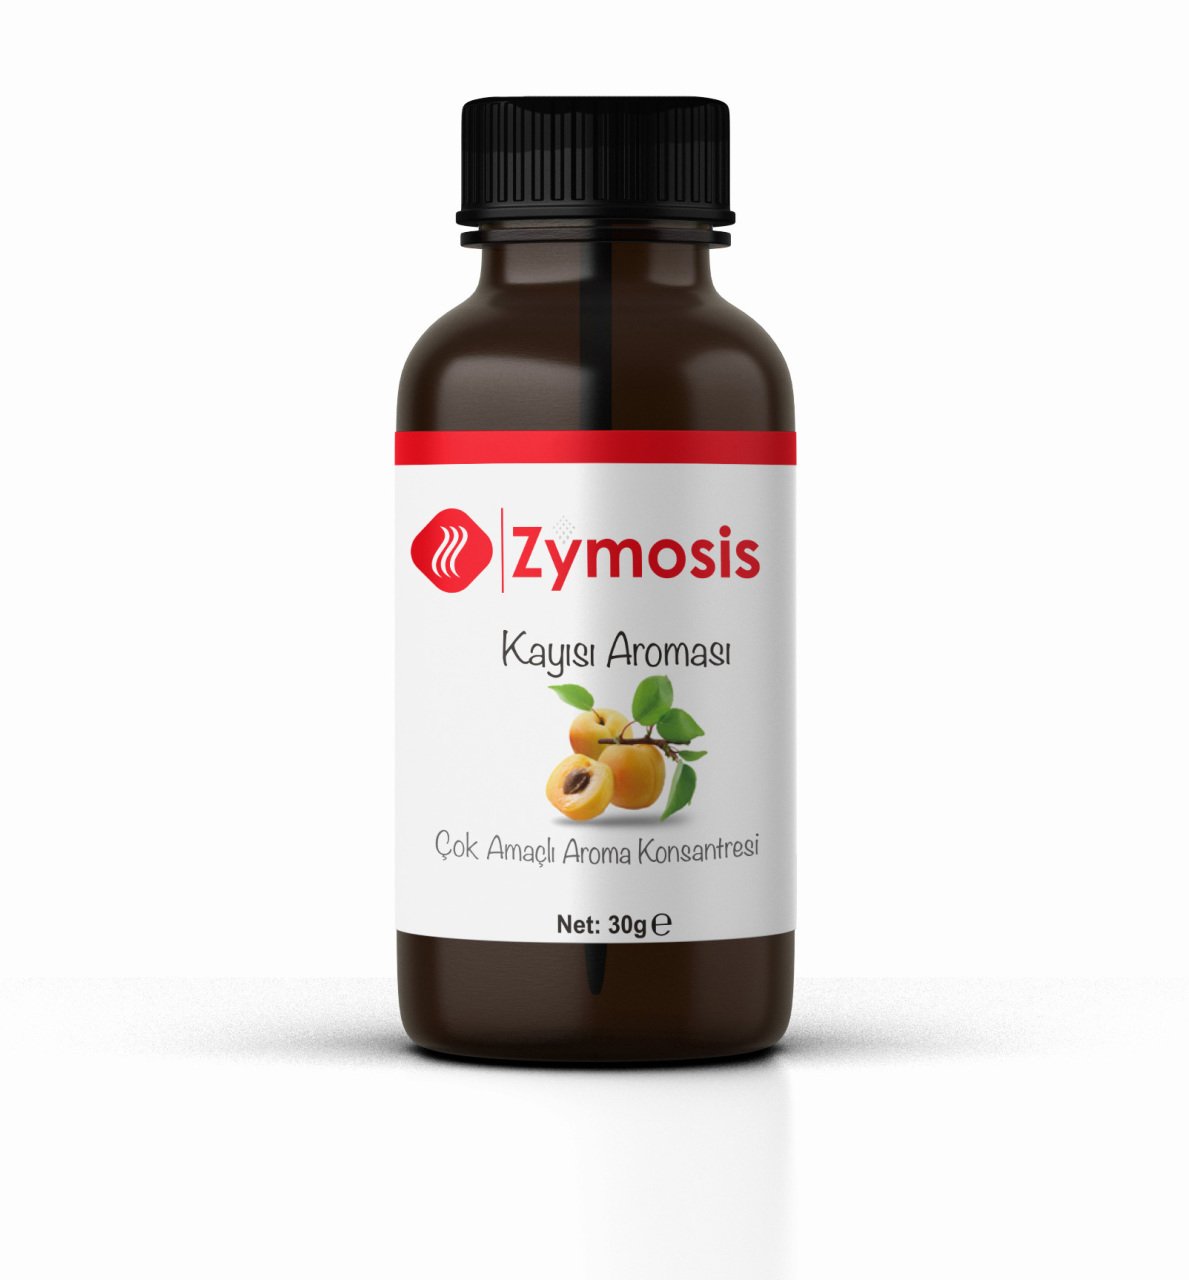 Zymosis Kayısı Aroması